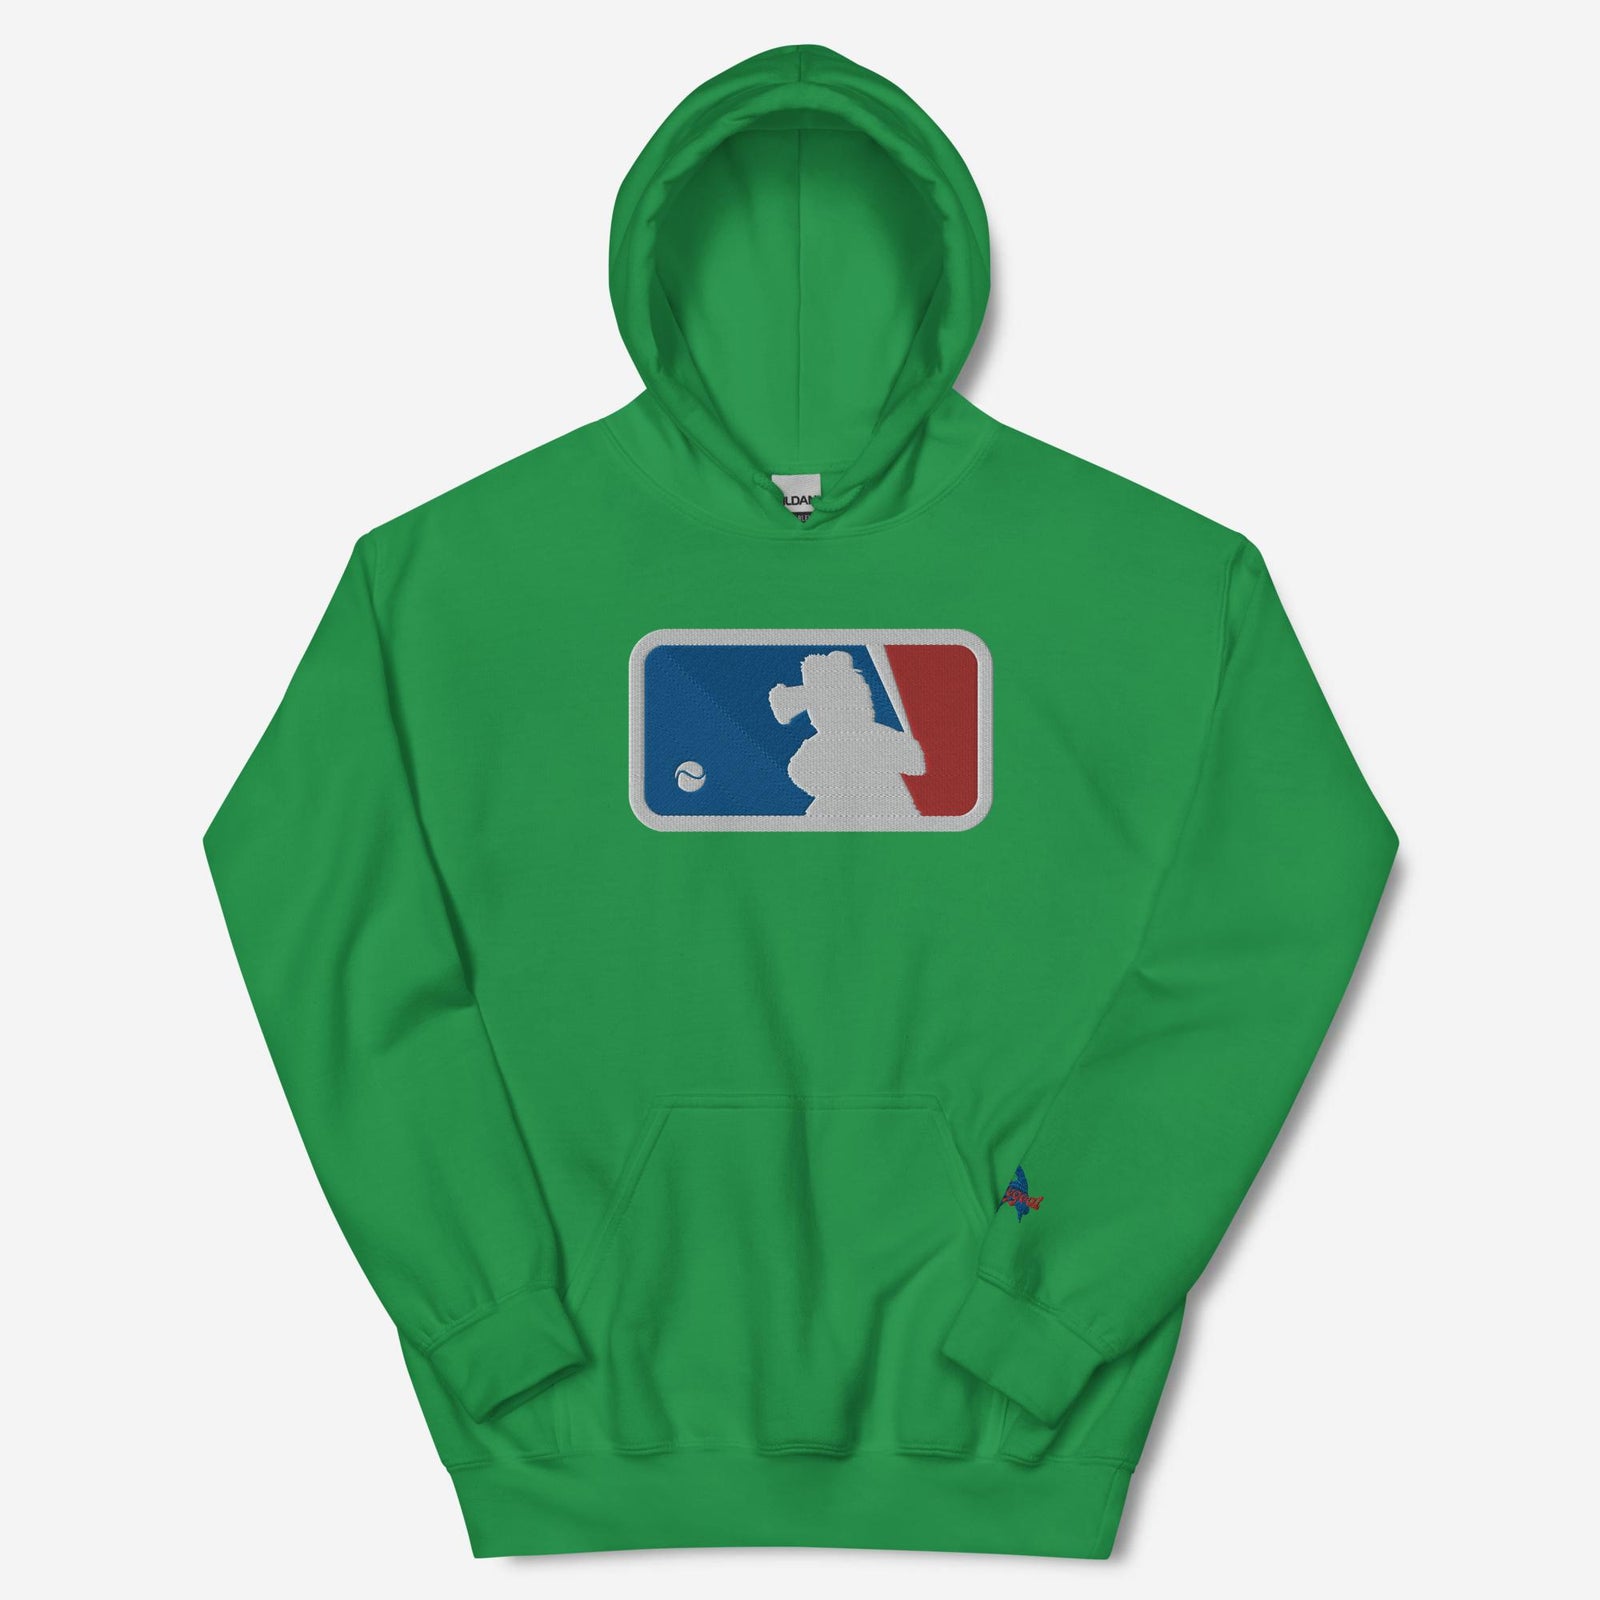 "Major Baseball Phan" Embroidered Hoodie